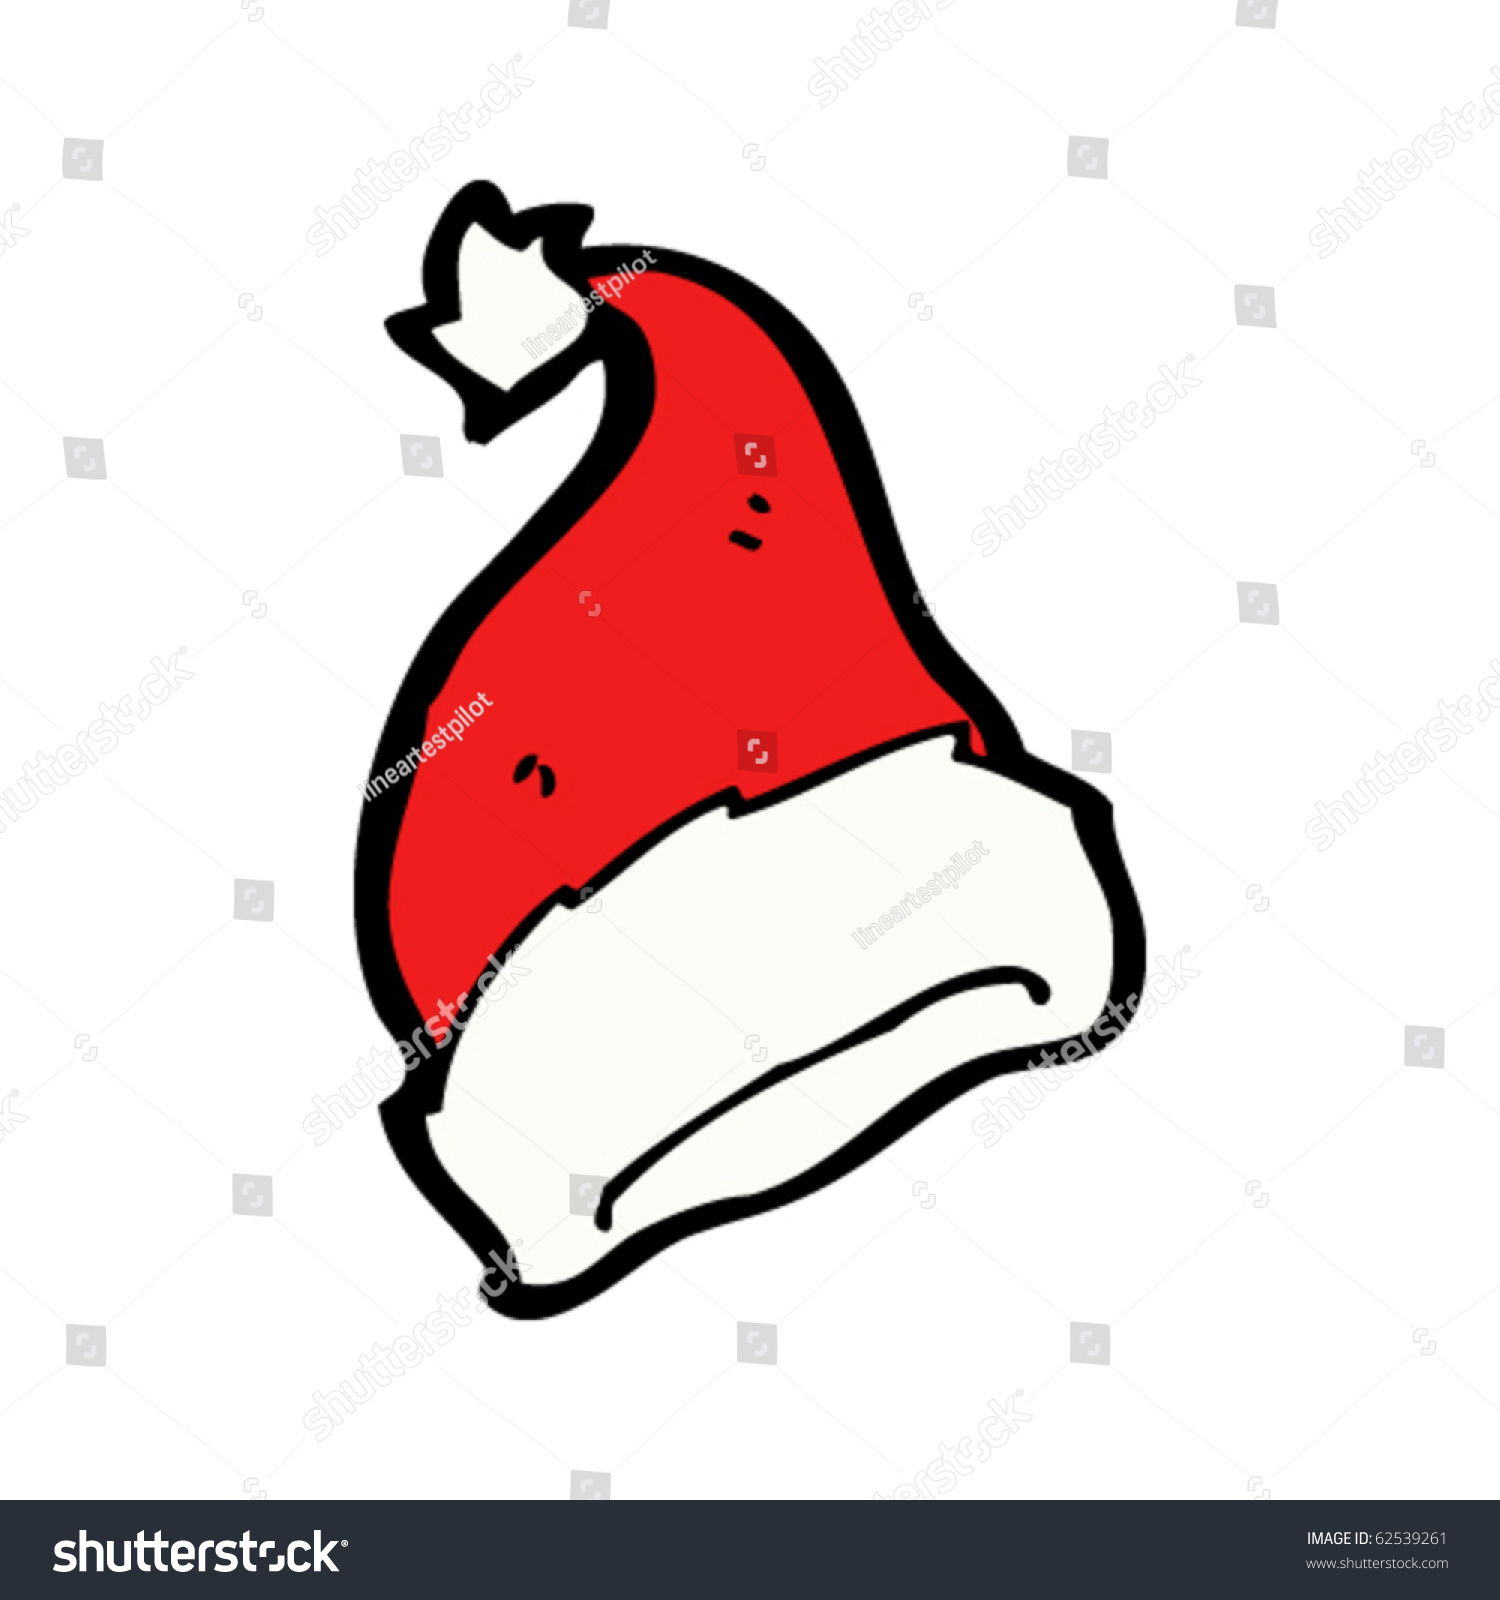 Christmas Hat Cartoon Stock Vector Illustration 62539261 : Shutterstock